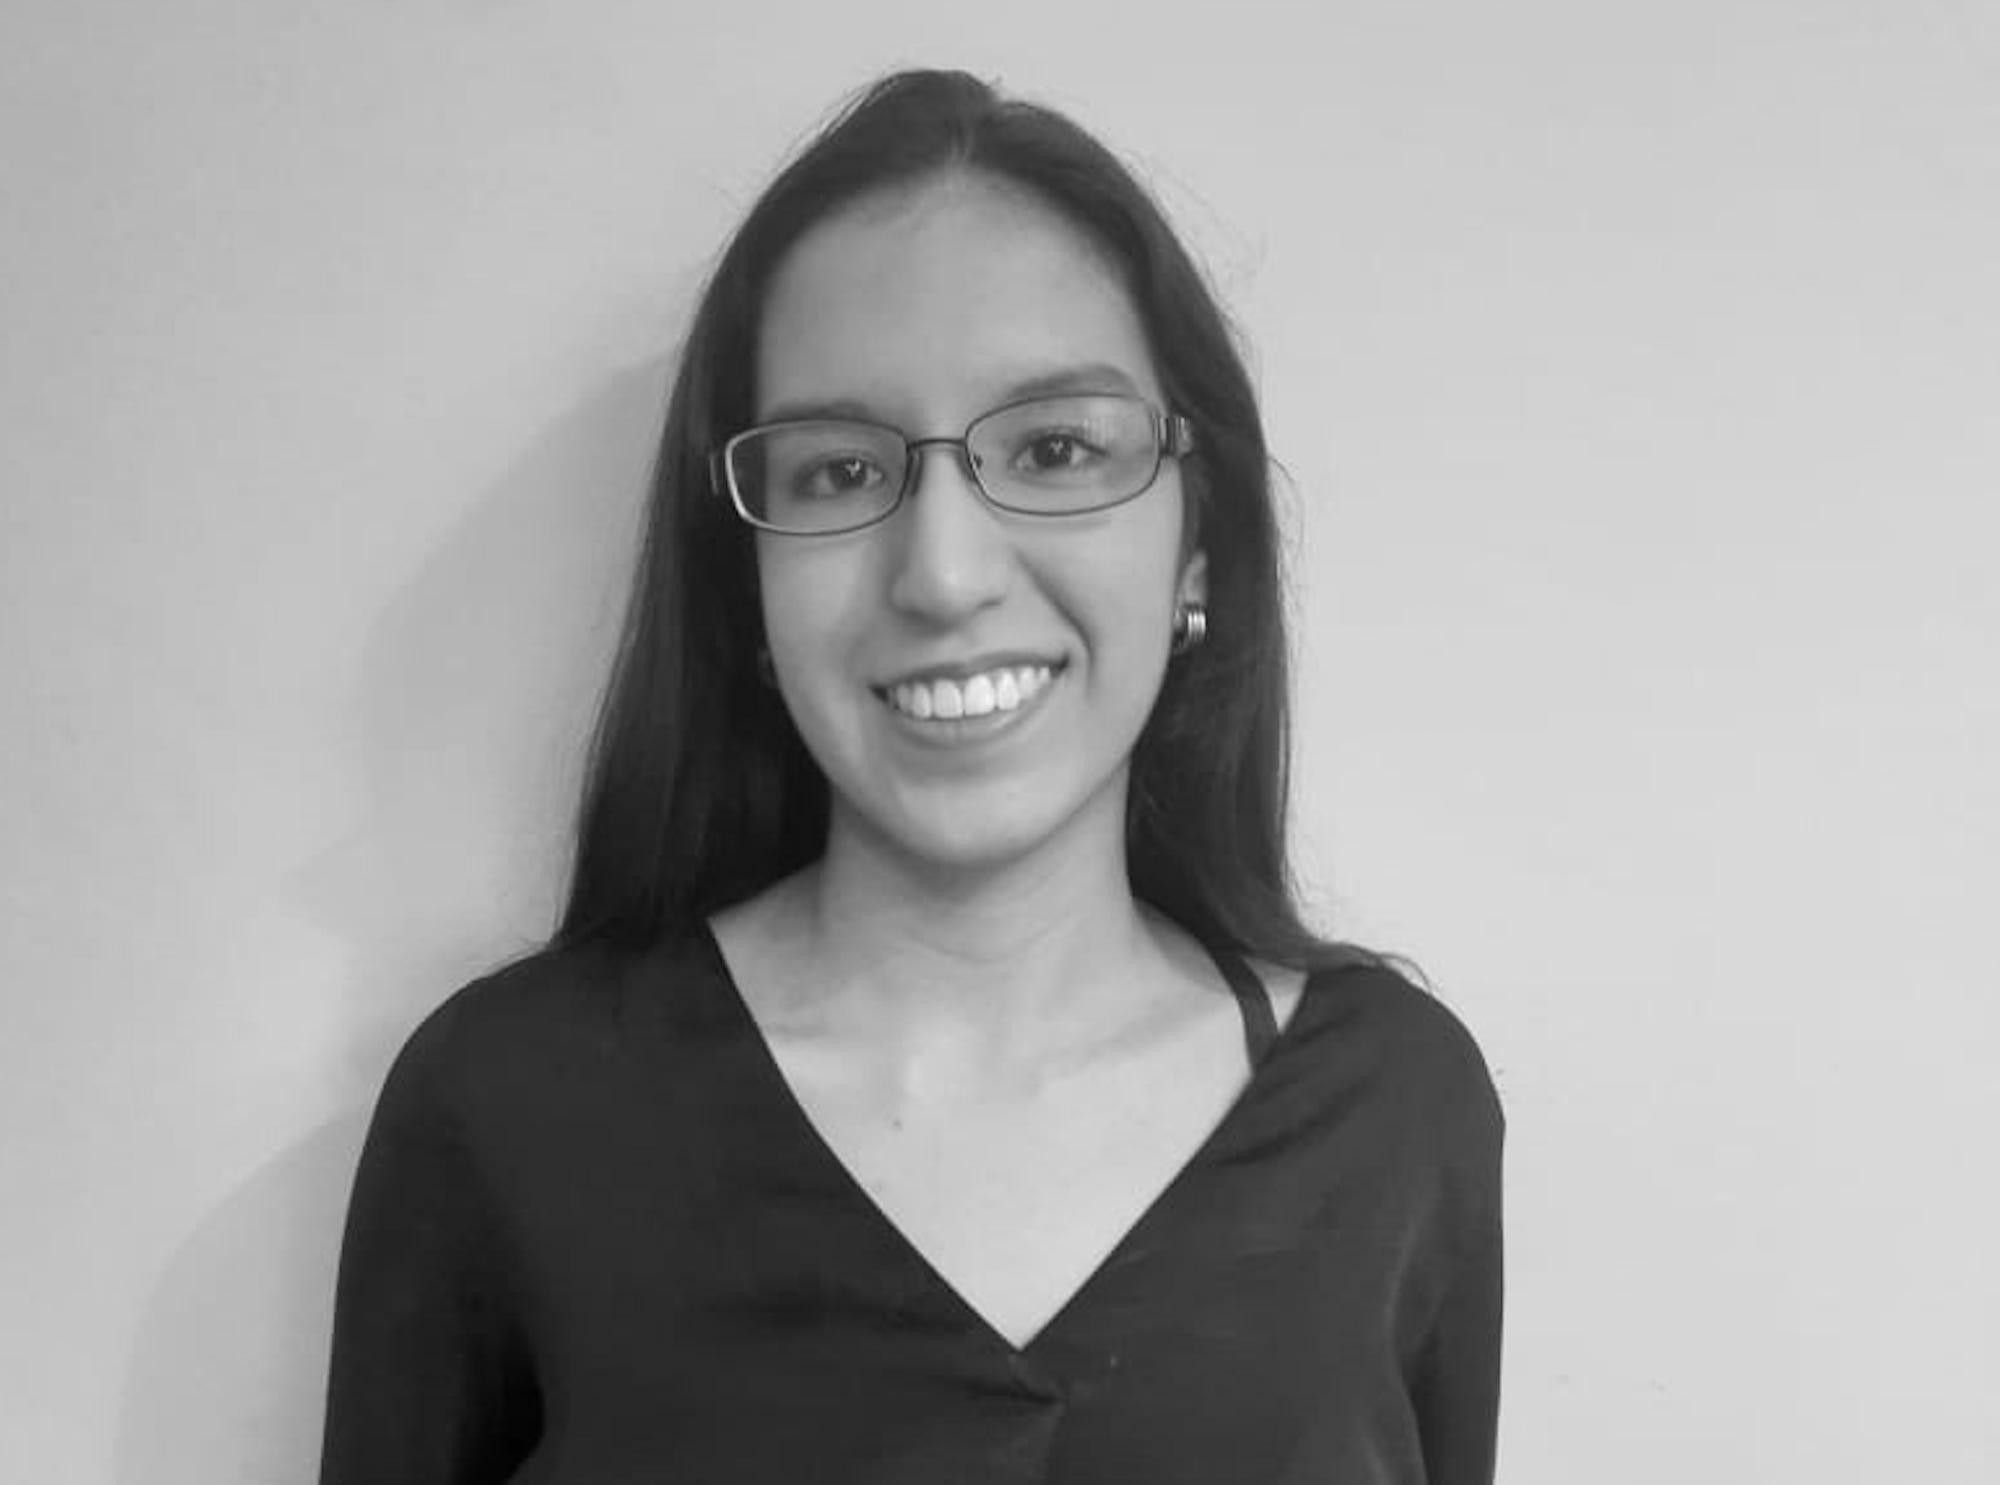 Elena Tobar es estudiante de Ciencias Jurídicas. Forma parte del Club de Opinión Política Estudiantil (COPE) de la ESEN.